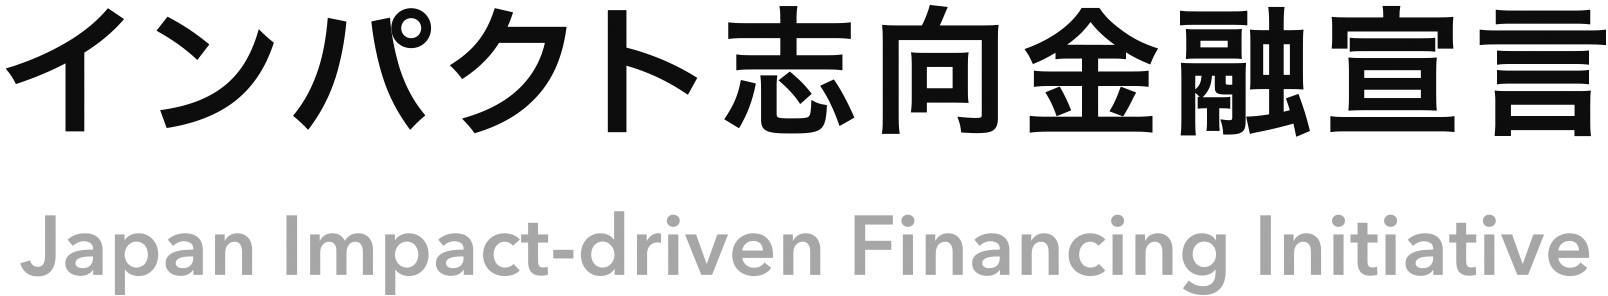 インパクト志向金融宣言のロゴ